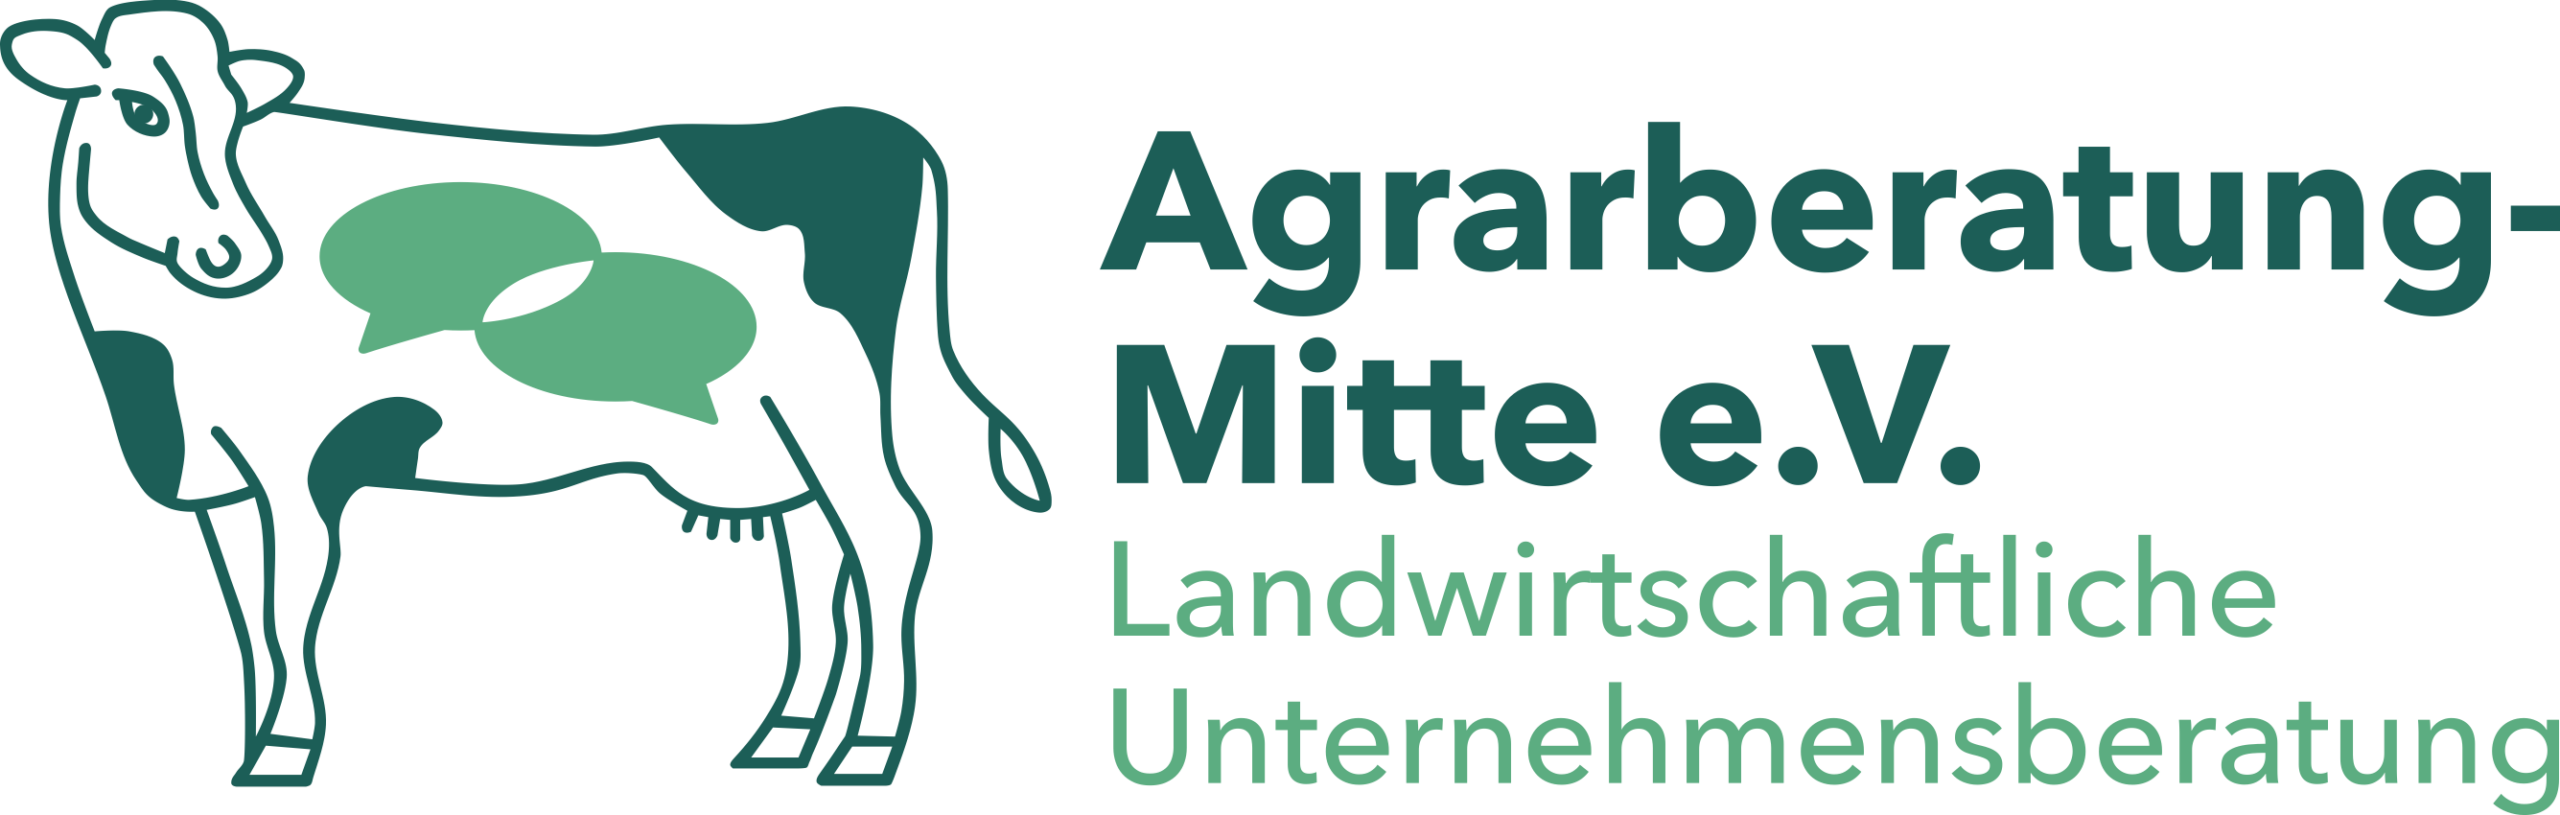 Logo der ABM: Kuh mit Sprechblasen. Text: Agrarberatung-Mitte e.V. Landwirtschaftliche Unternehmensberatung